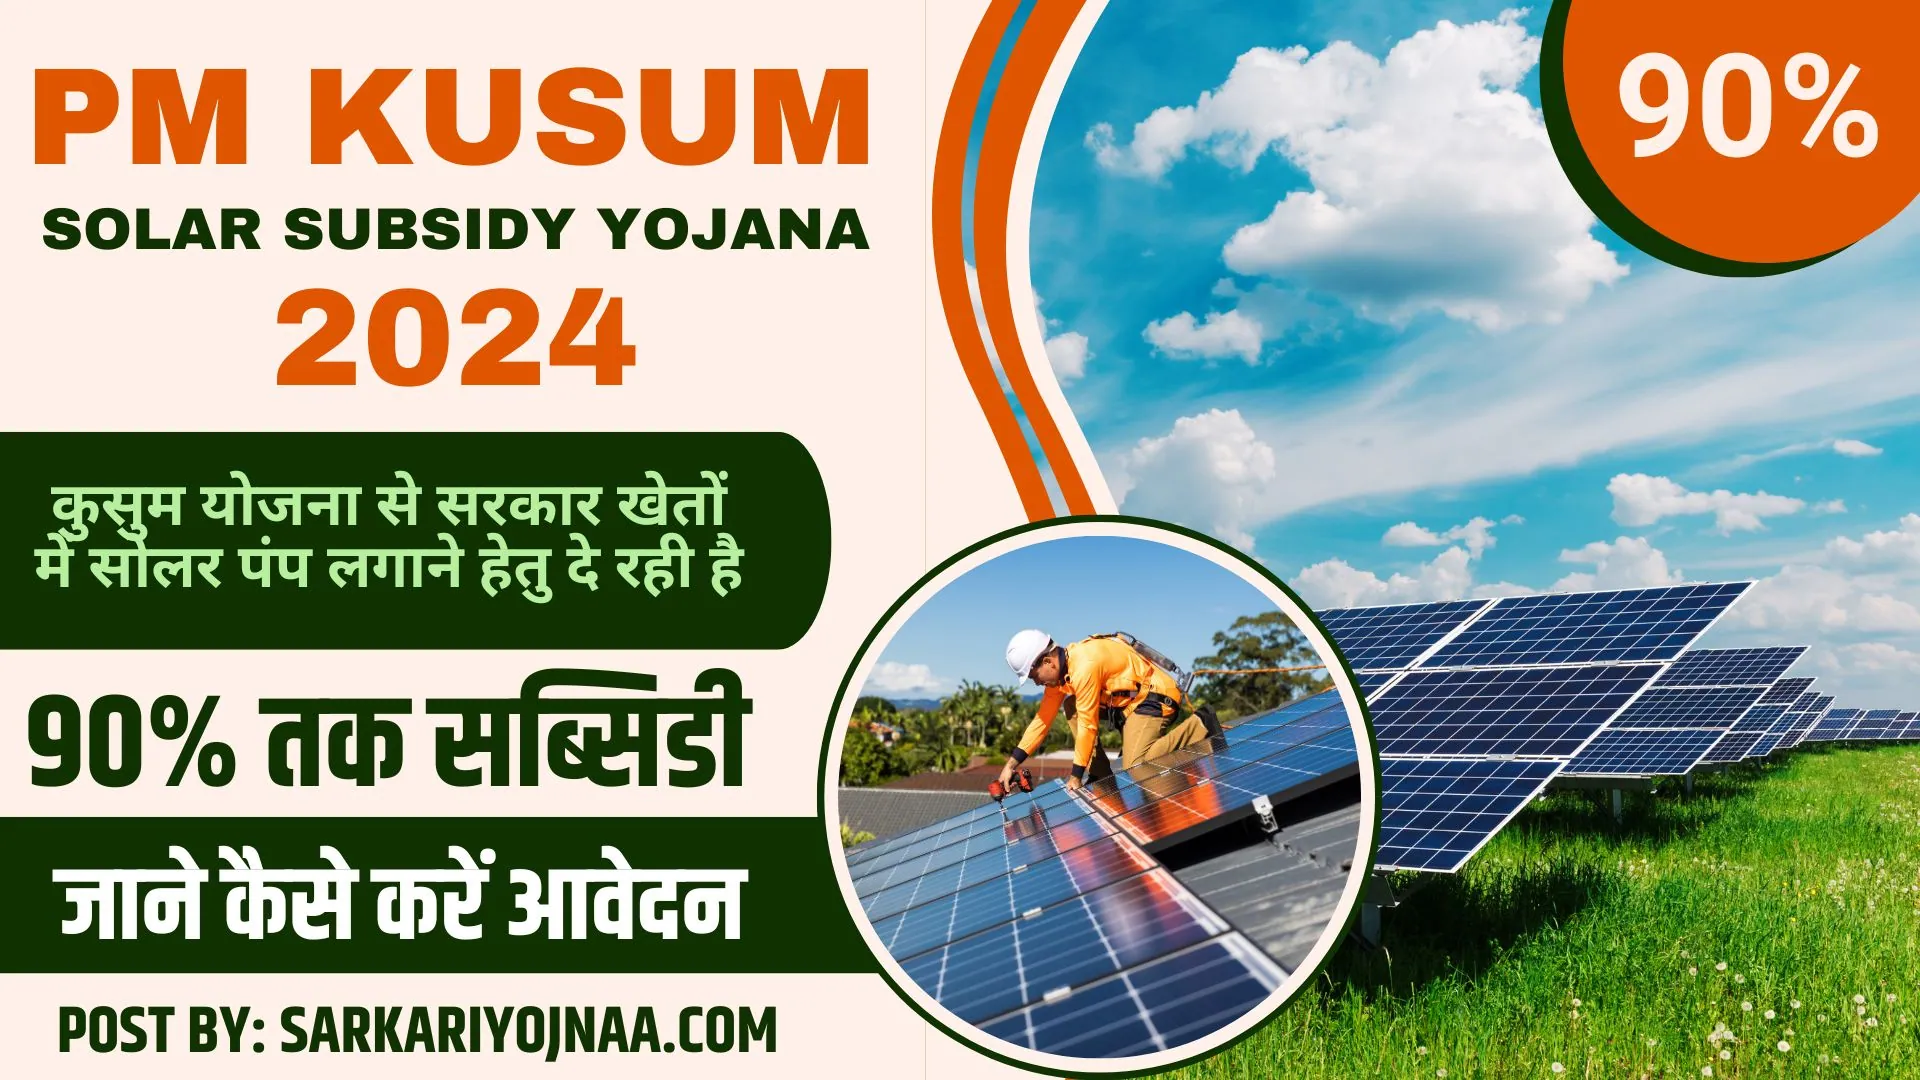 PM Kusum Solar Subsidy Yojana 2024: कुसुम योजना से सरकार खेतों में सोलर पंप लगाने हेतु दे रही है 90% तक सब्सिडी, जाने कैसे करें आवेदन